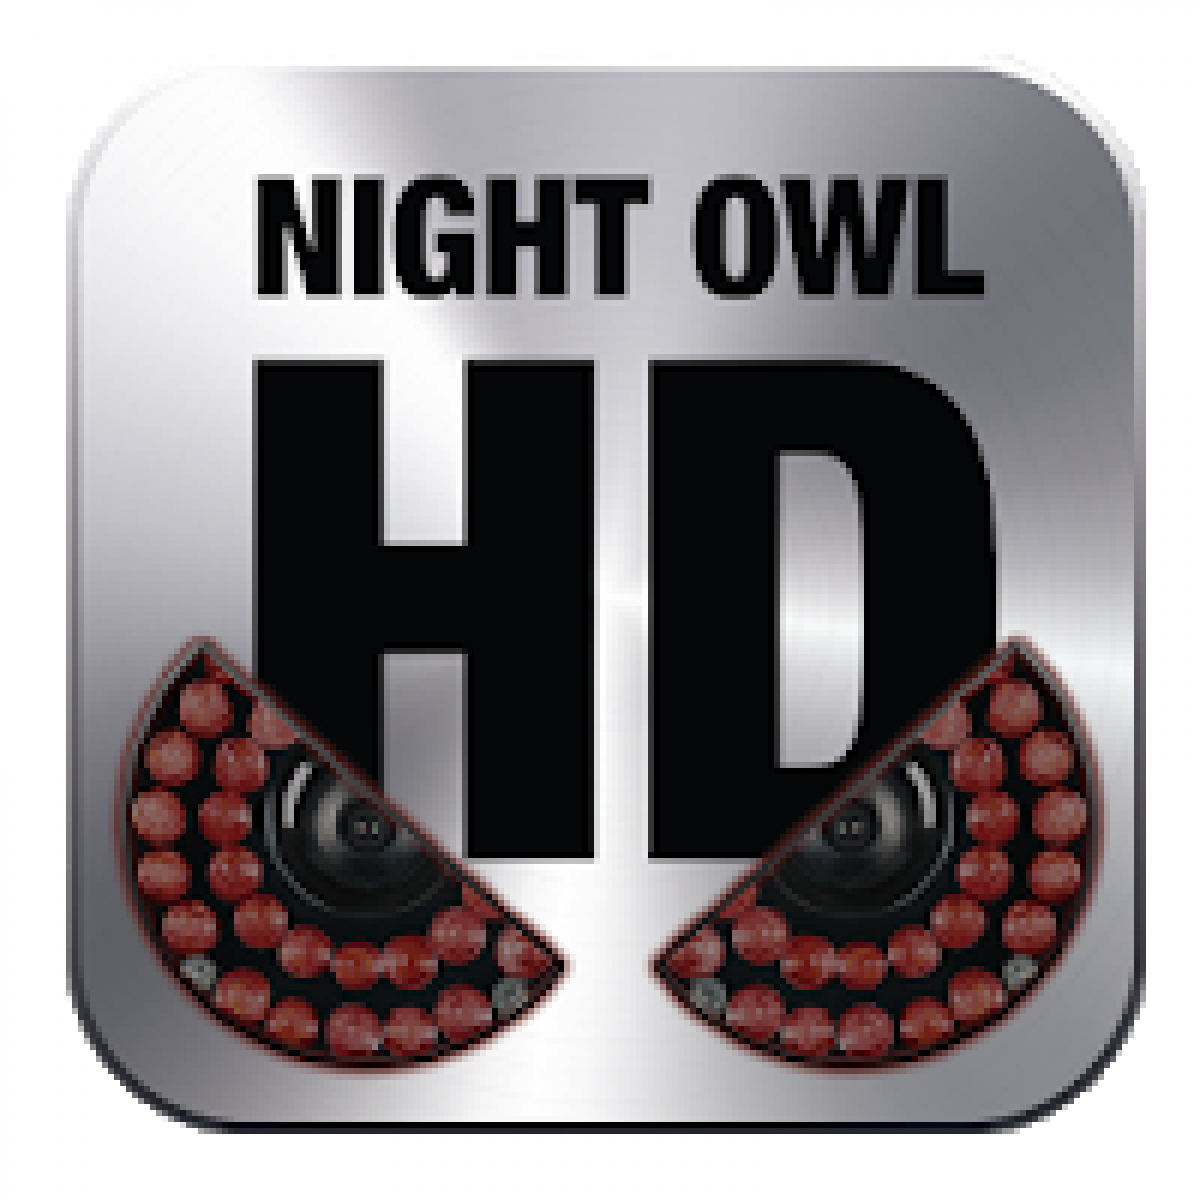 install night owl on laptop